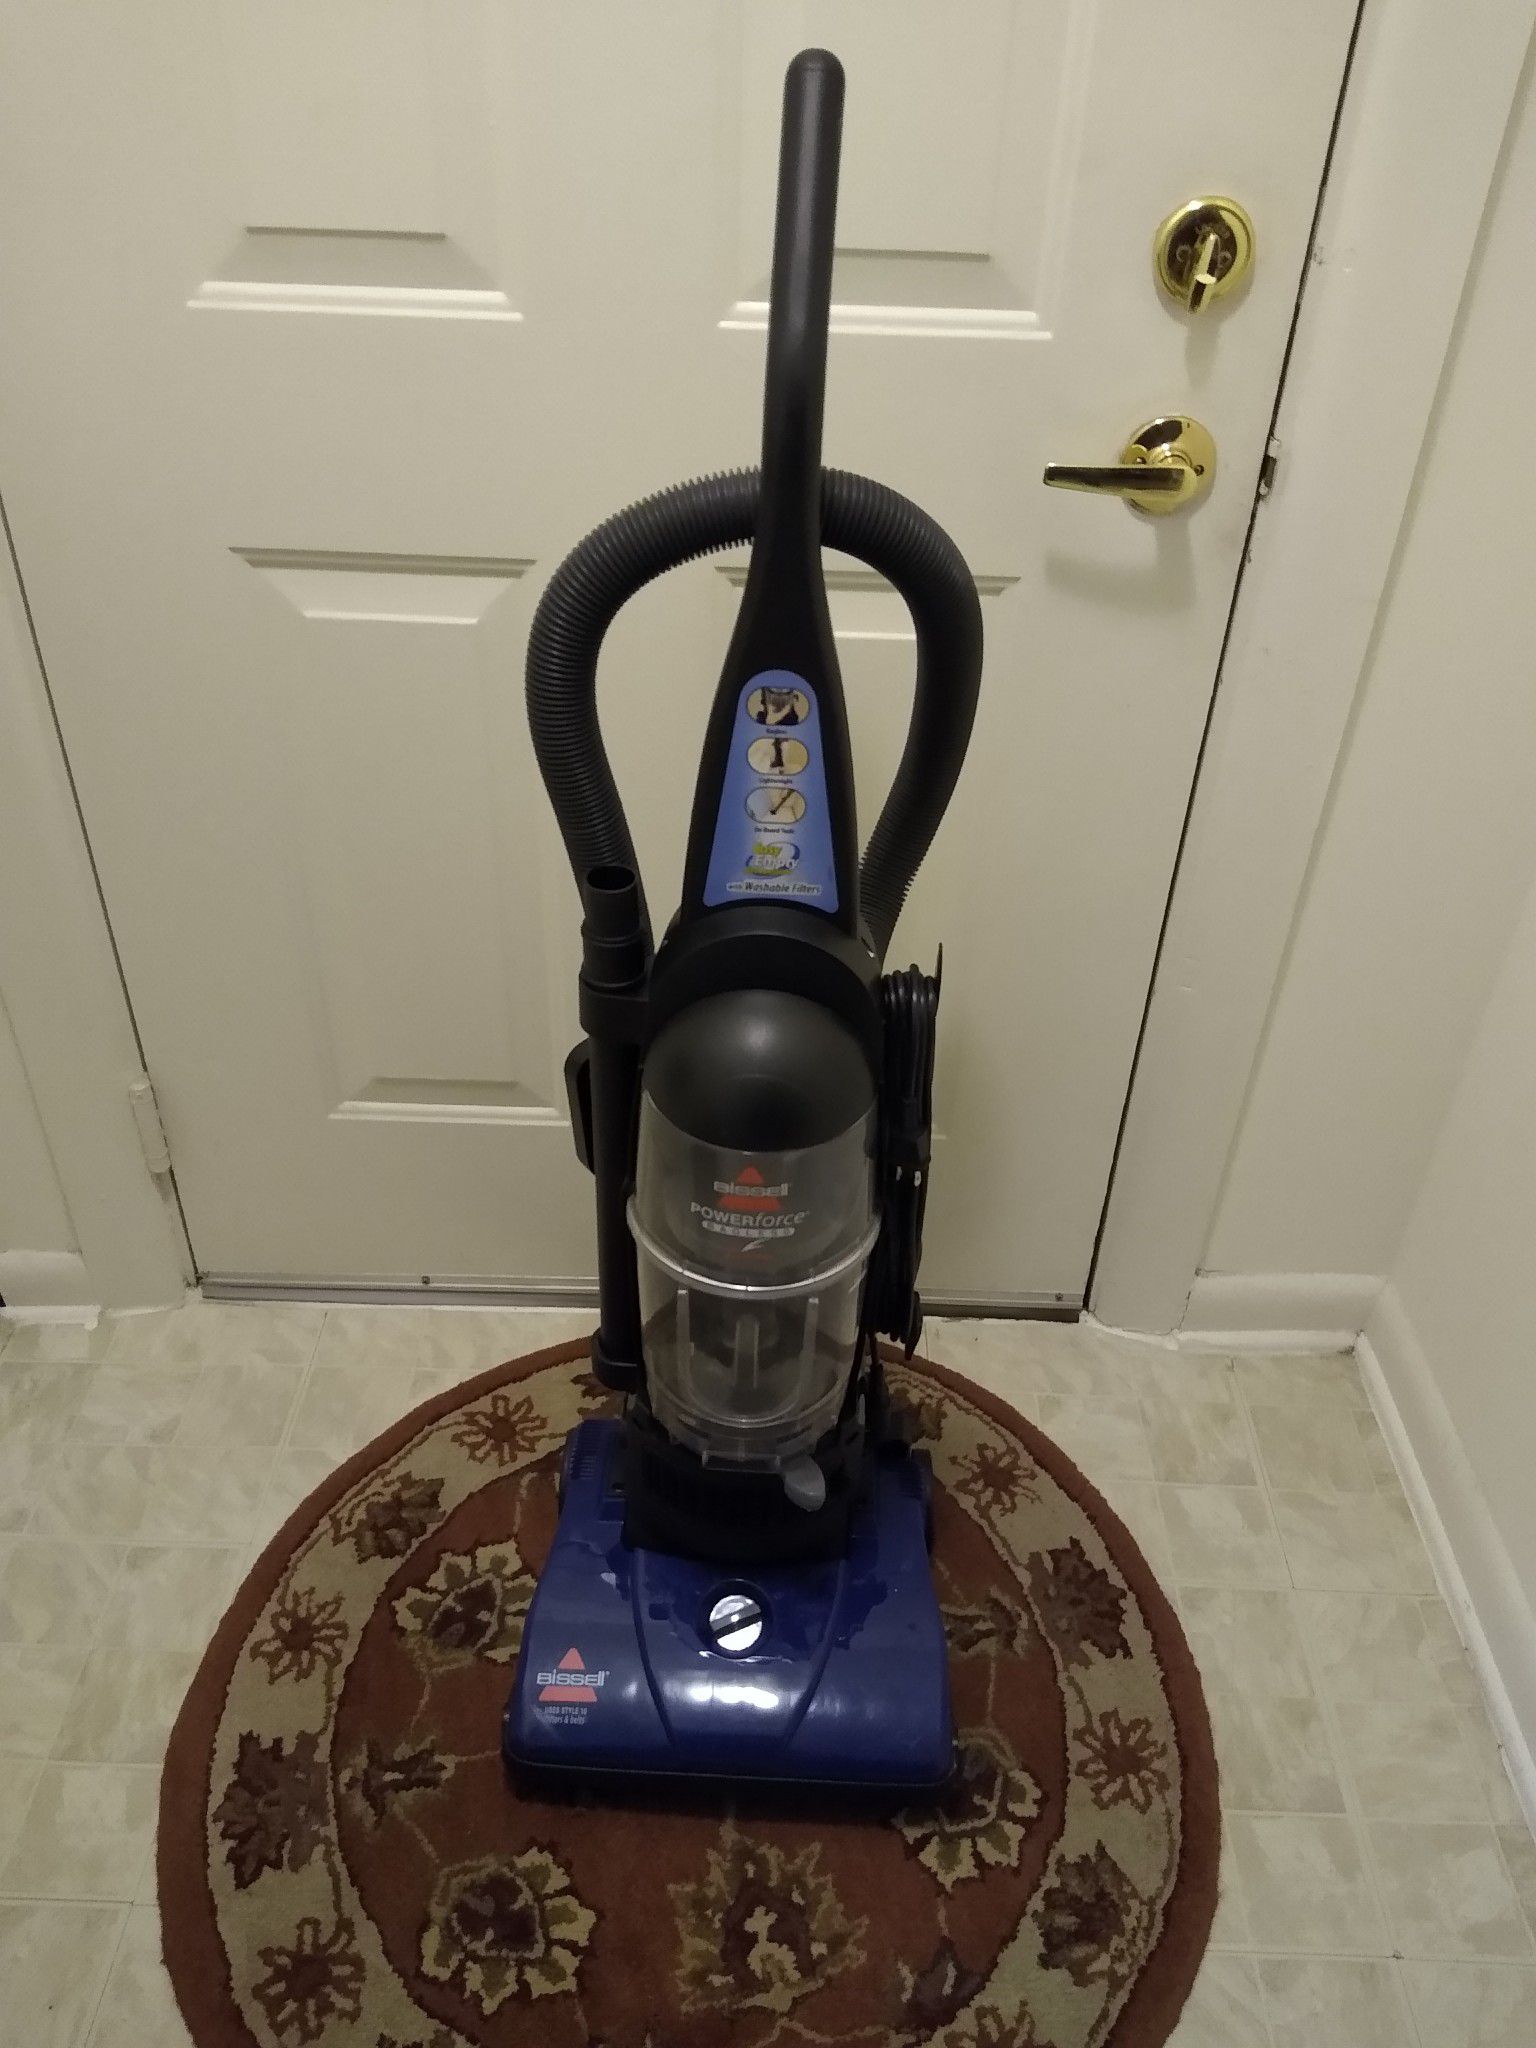 Used vacuum 30.00